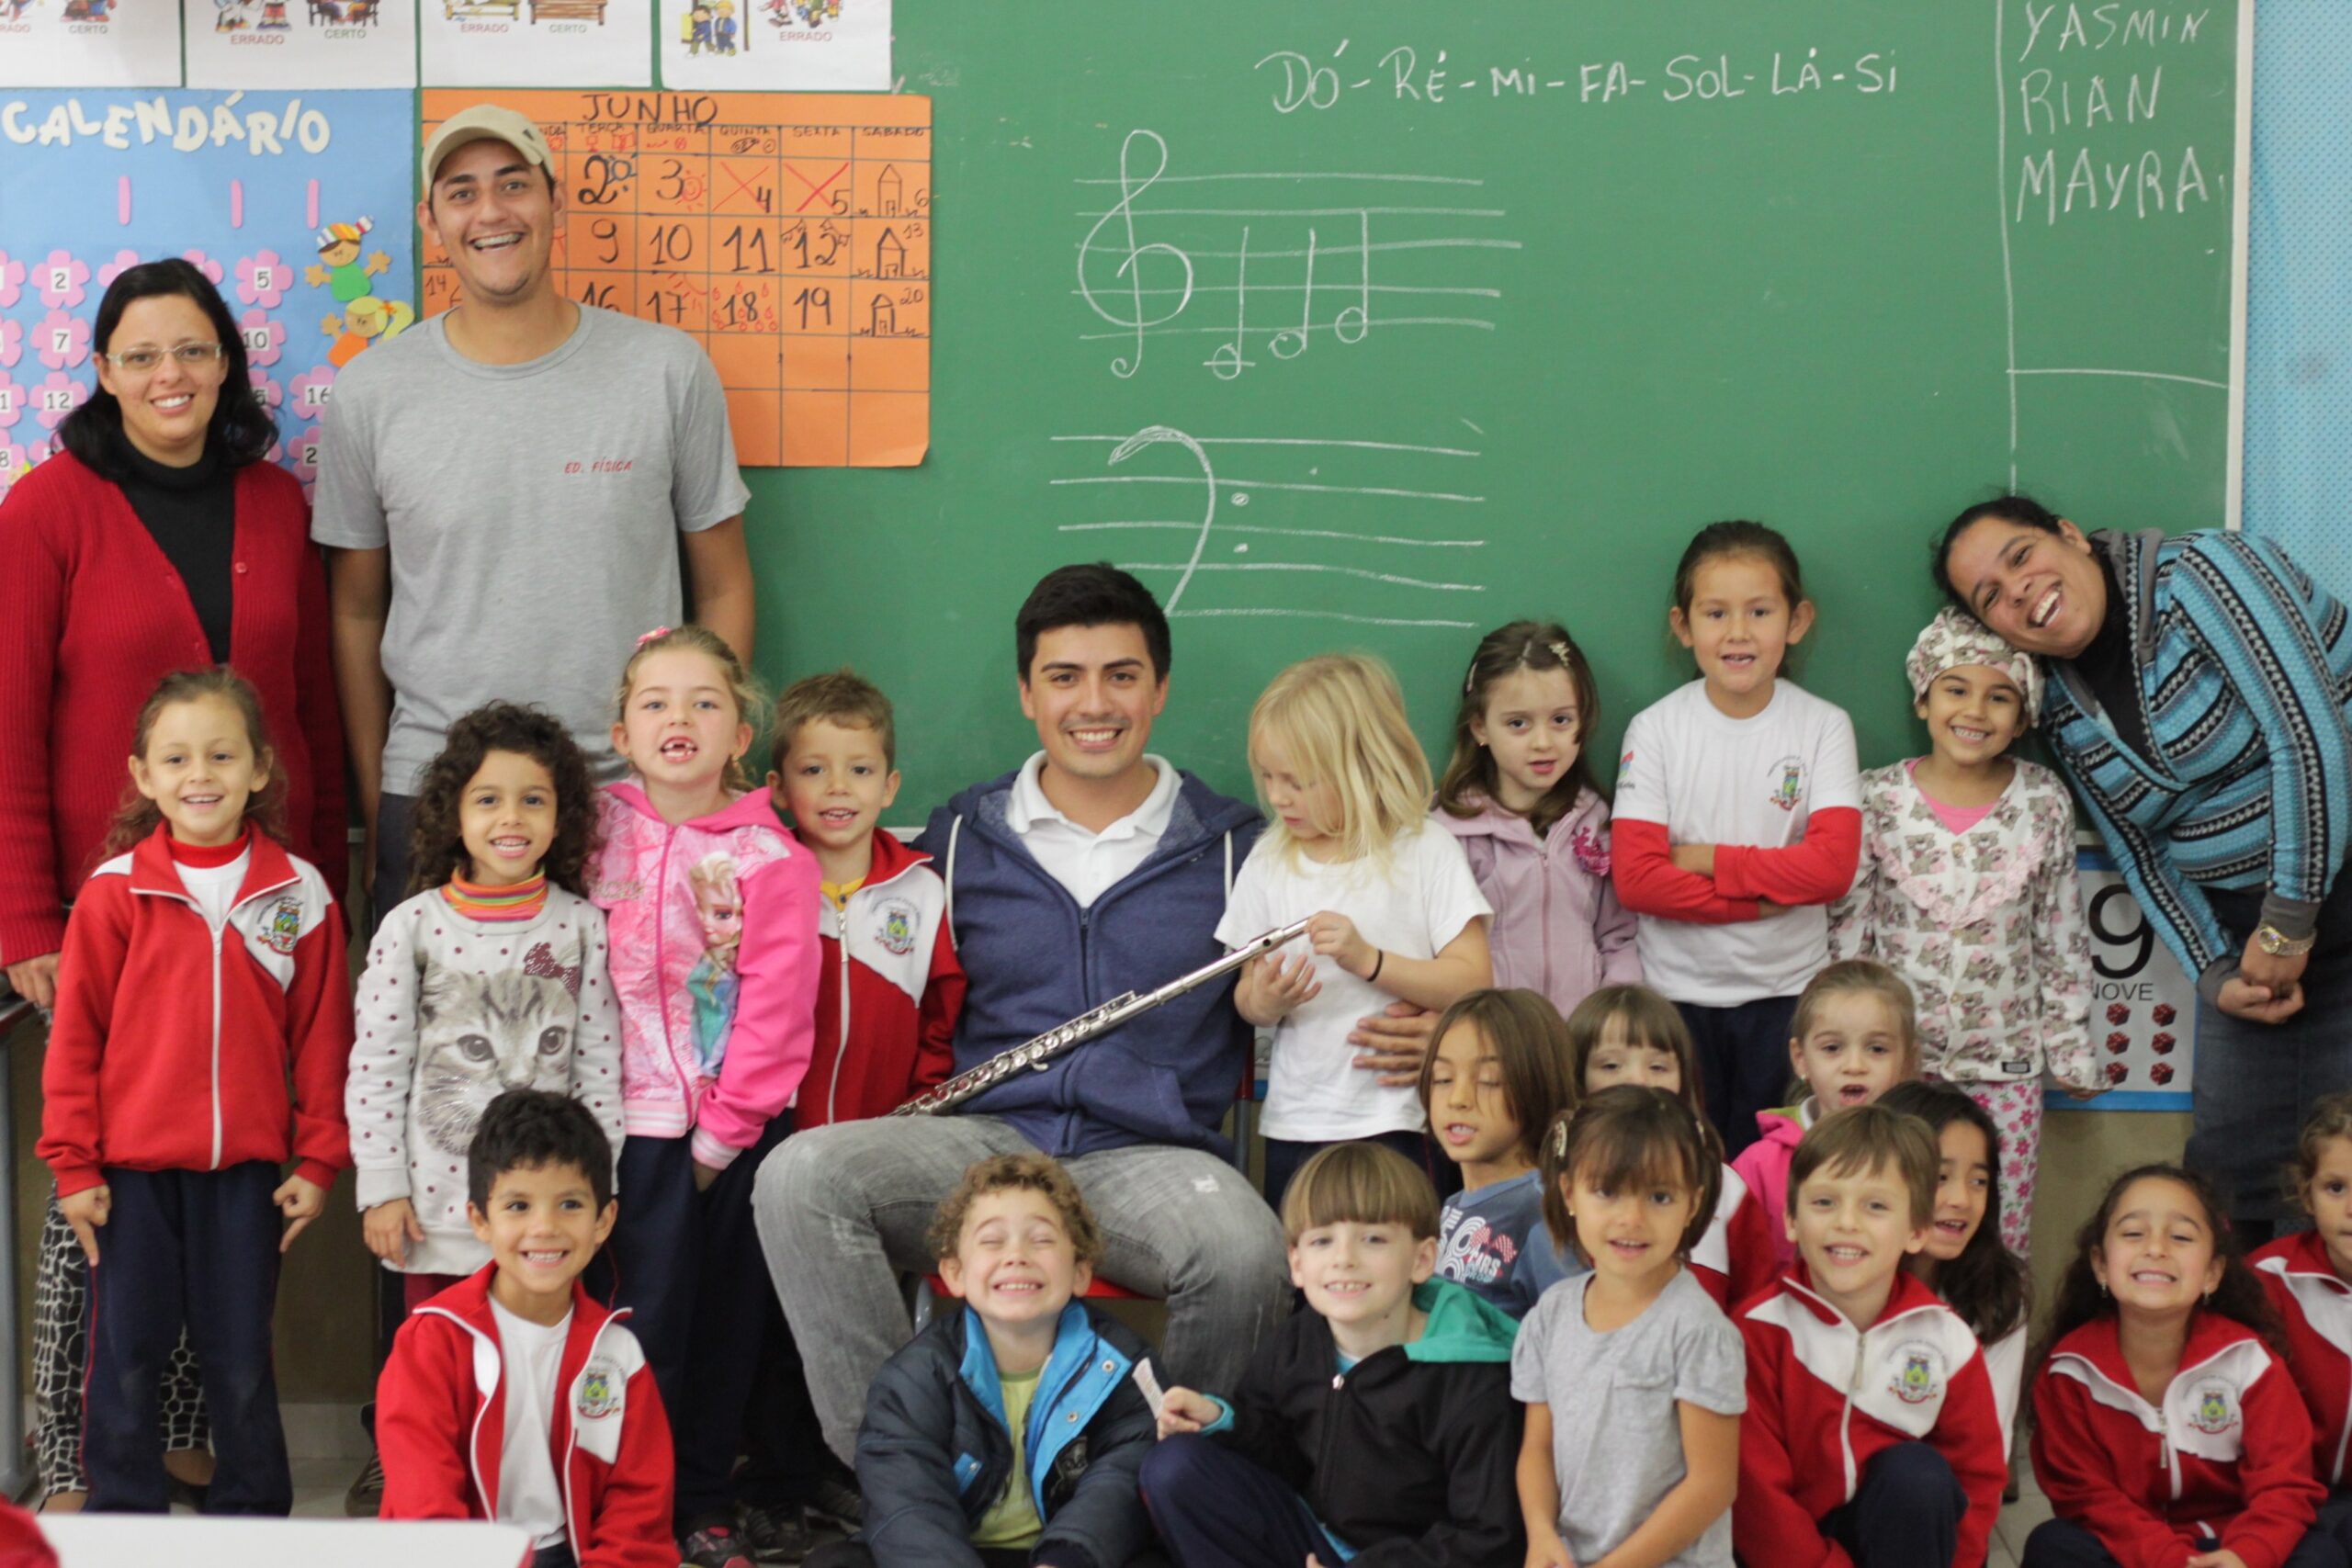 O flautista tocou sua flauta atraindo a atenção das crianças que estudam a letra 'F'.